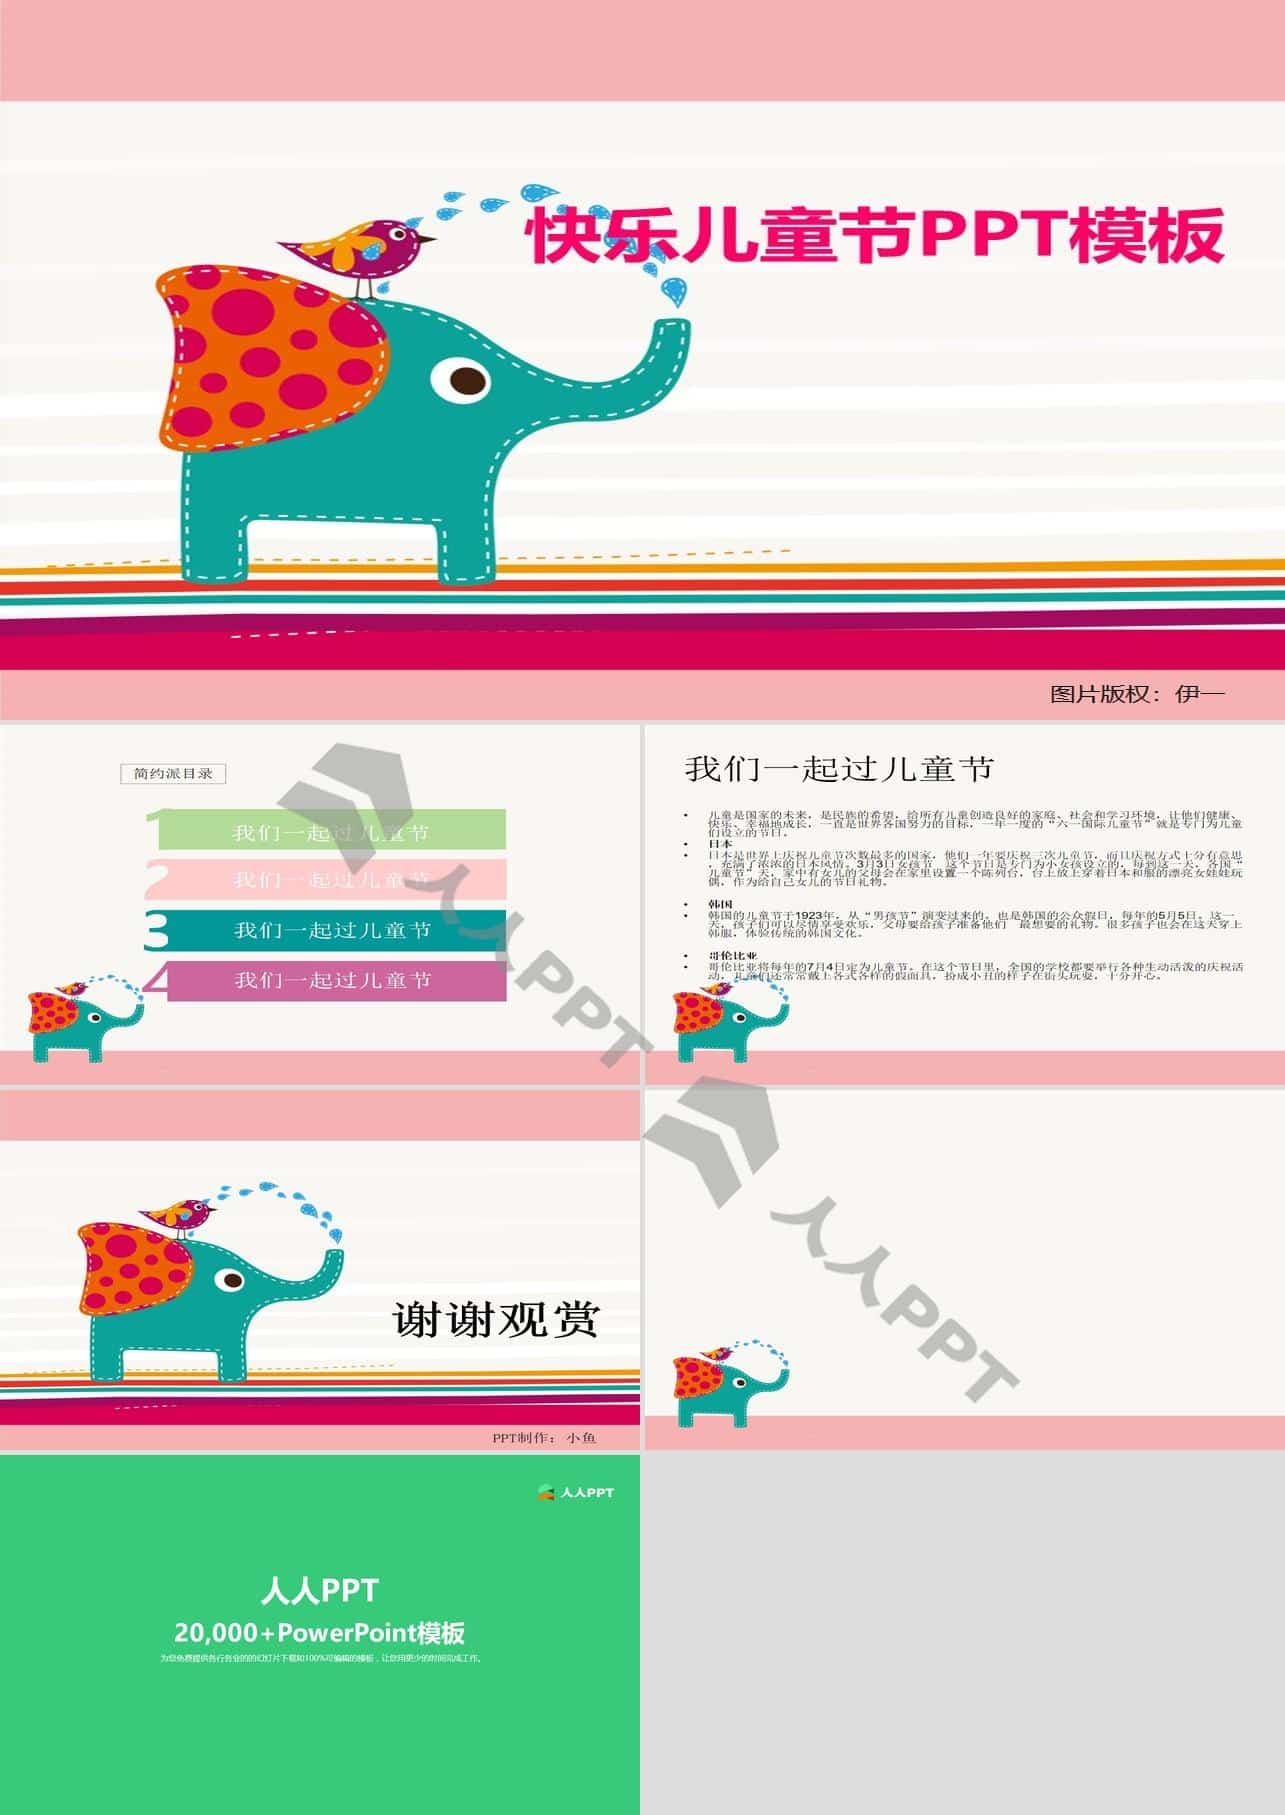 鸟儿与大象开心的玩耍――插画风设计儿童节PPT模板长图